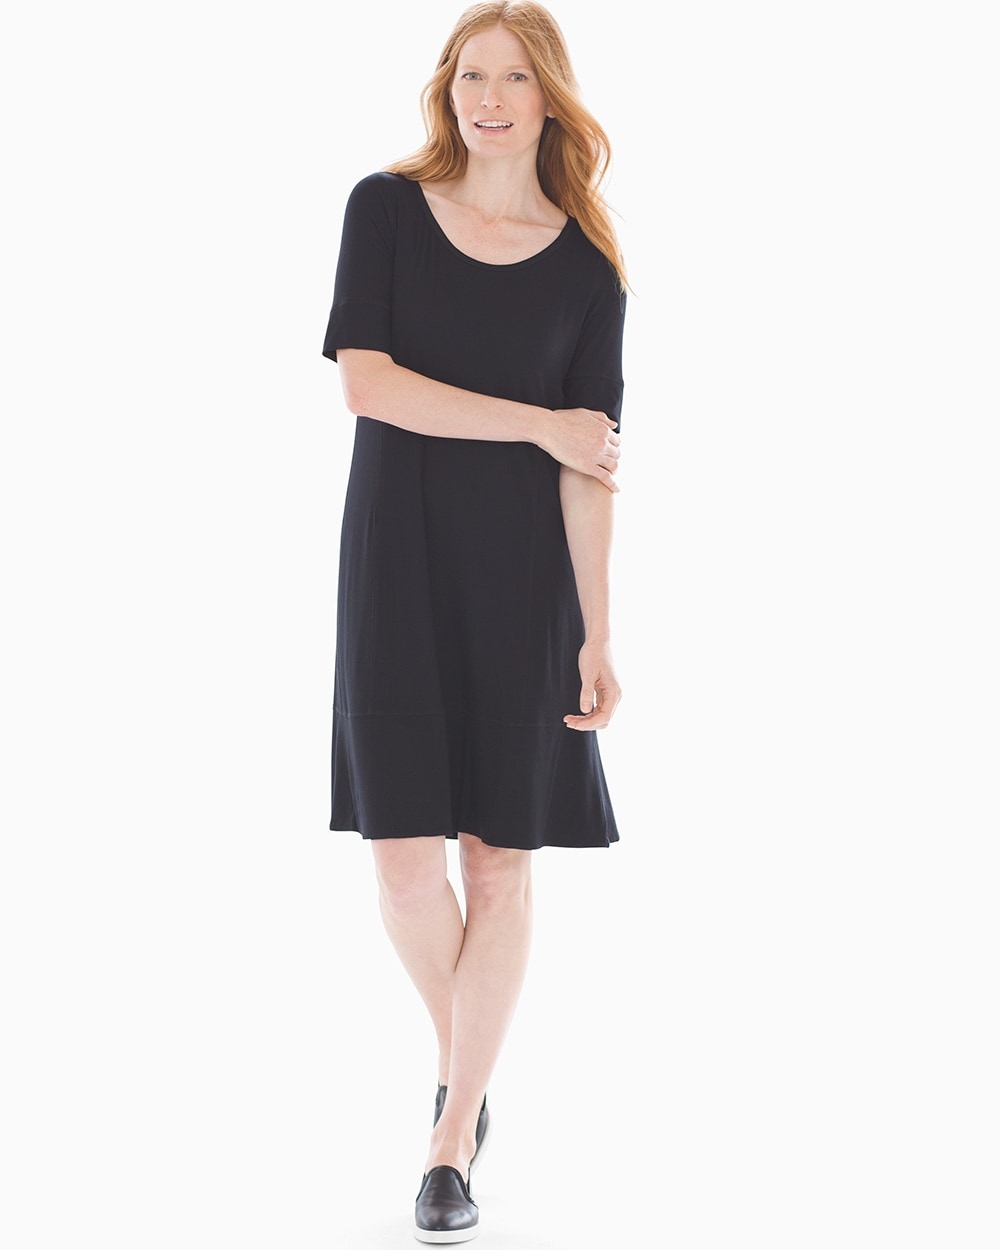 Soft Jersey Short Sleeve A-line Dress